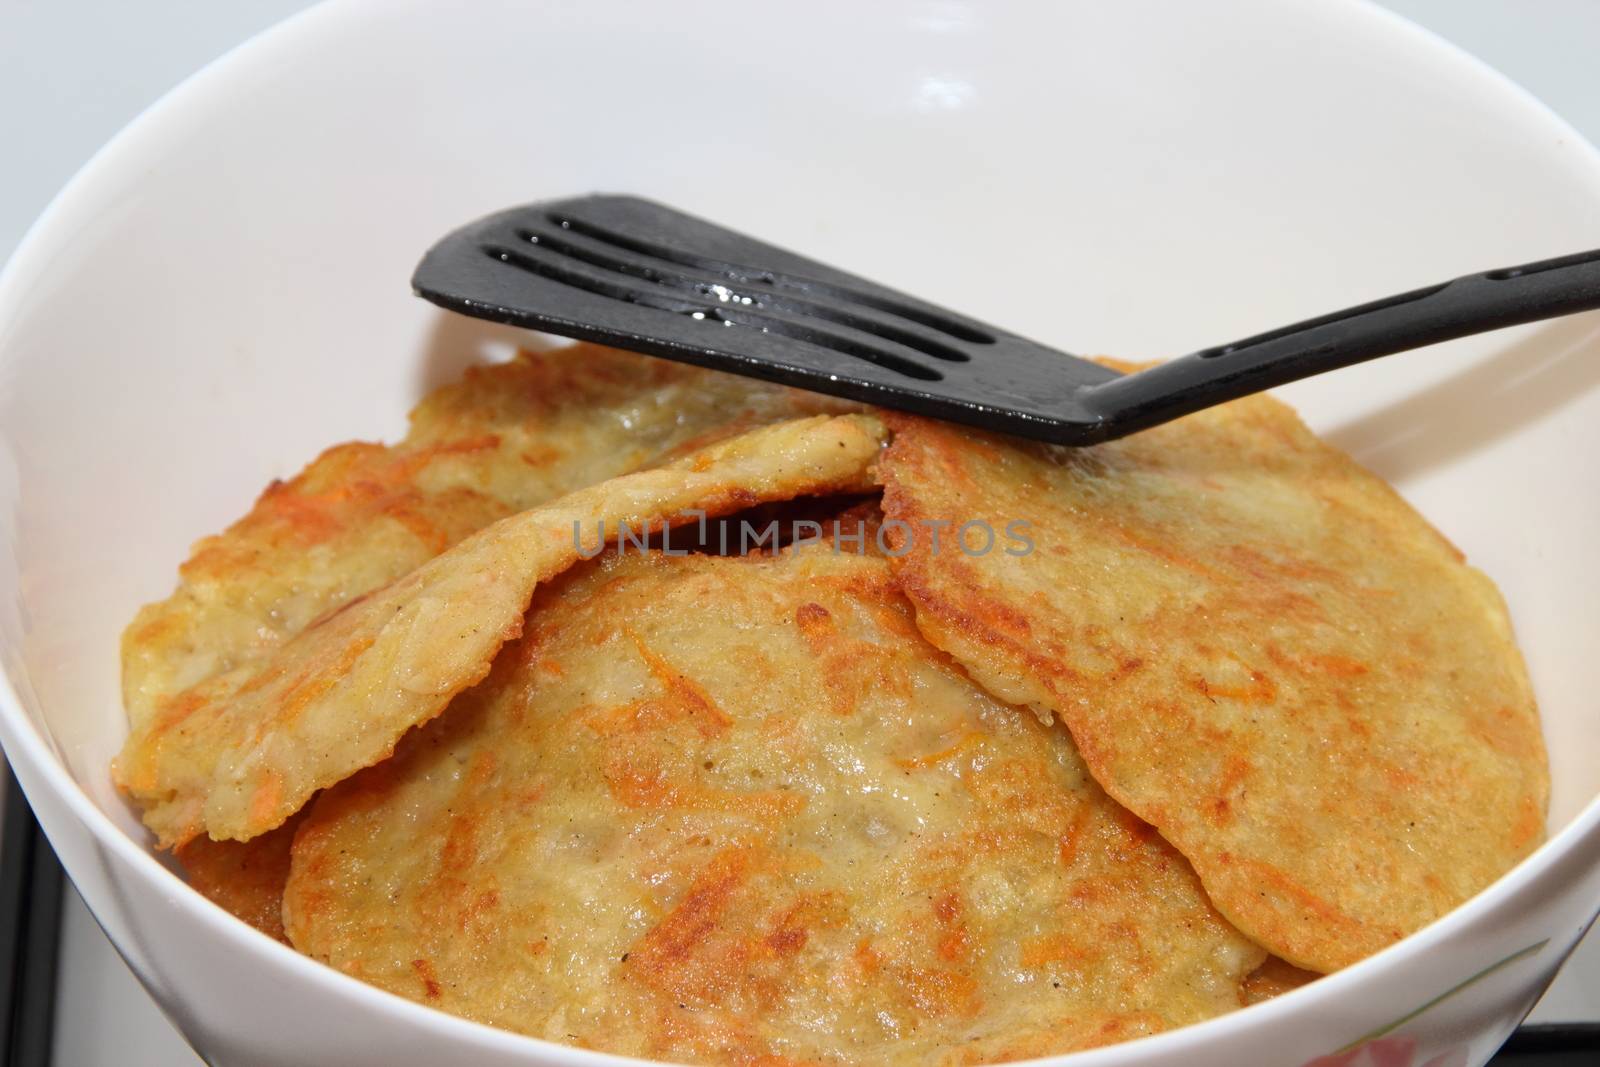 Potato pancakes by Metanna